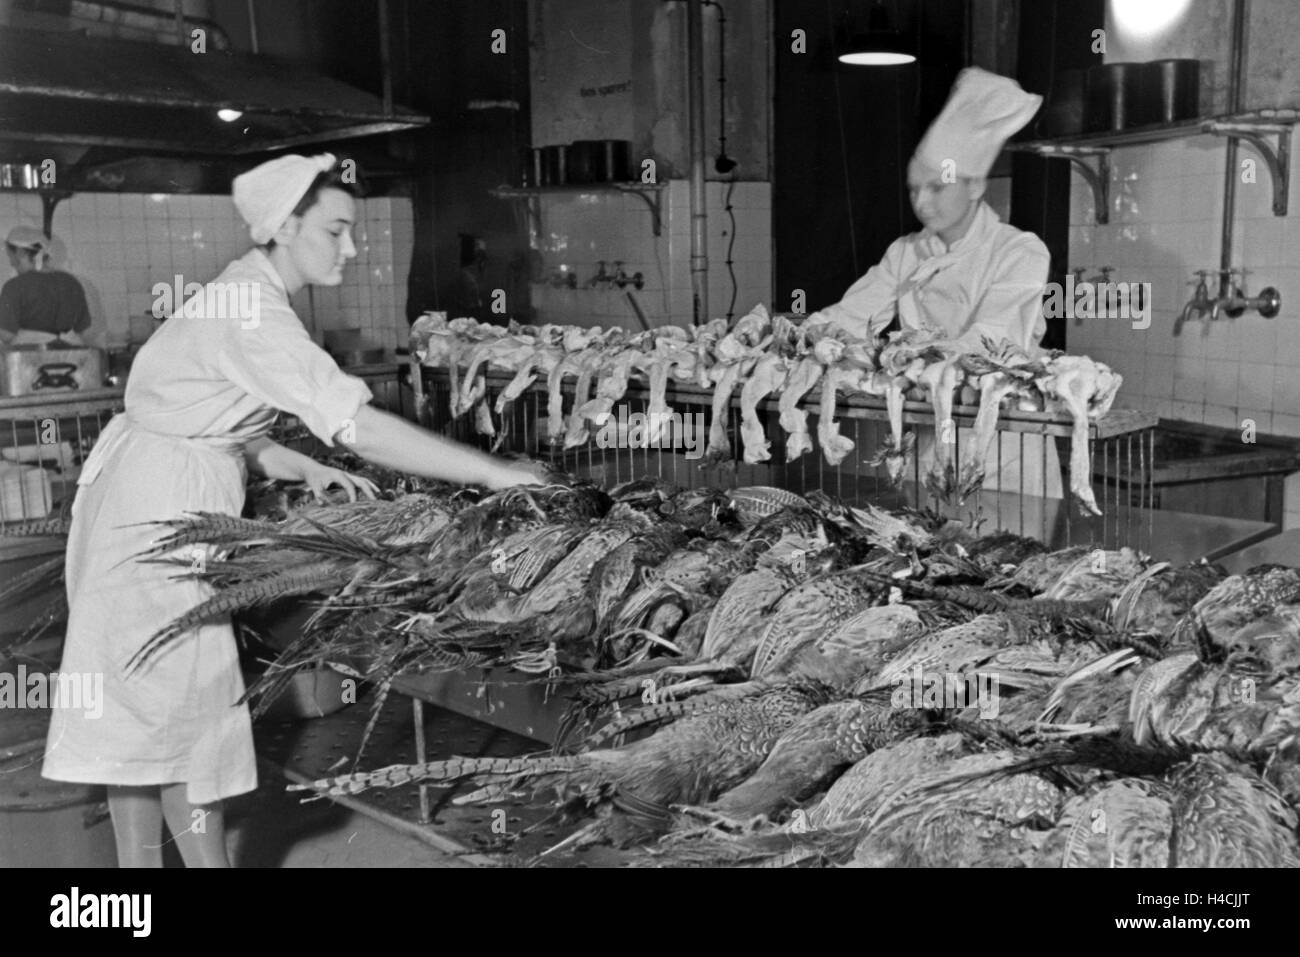 Eine Köchin und ein Koch mit frischem Geflügel in der Küche einer Gaststätte, Deutschland 1930er Jahre. Two chefs with fresh poultry at the kitchen of a restaurant, Germany 1930s Stock Photo